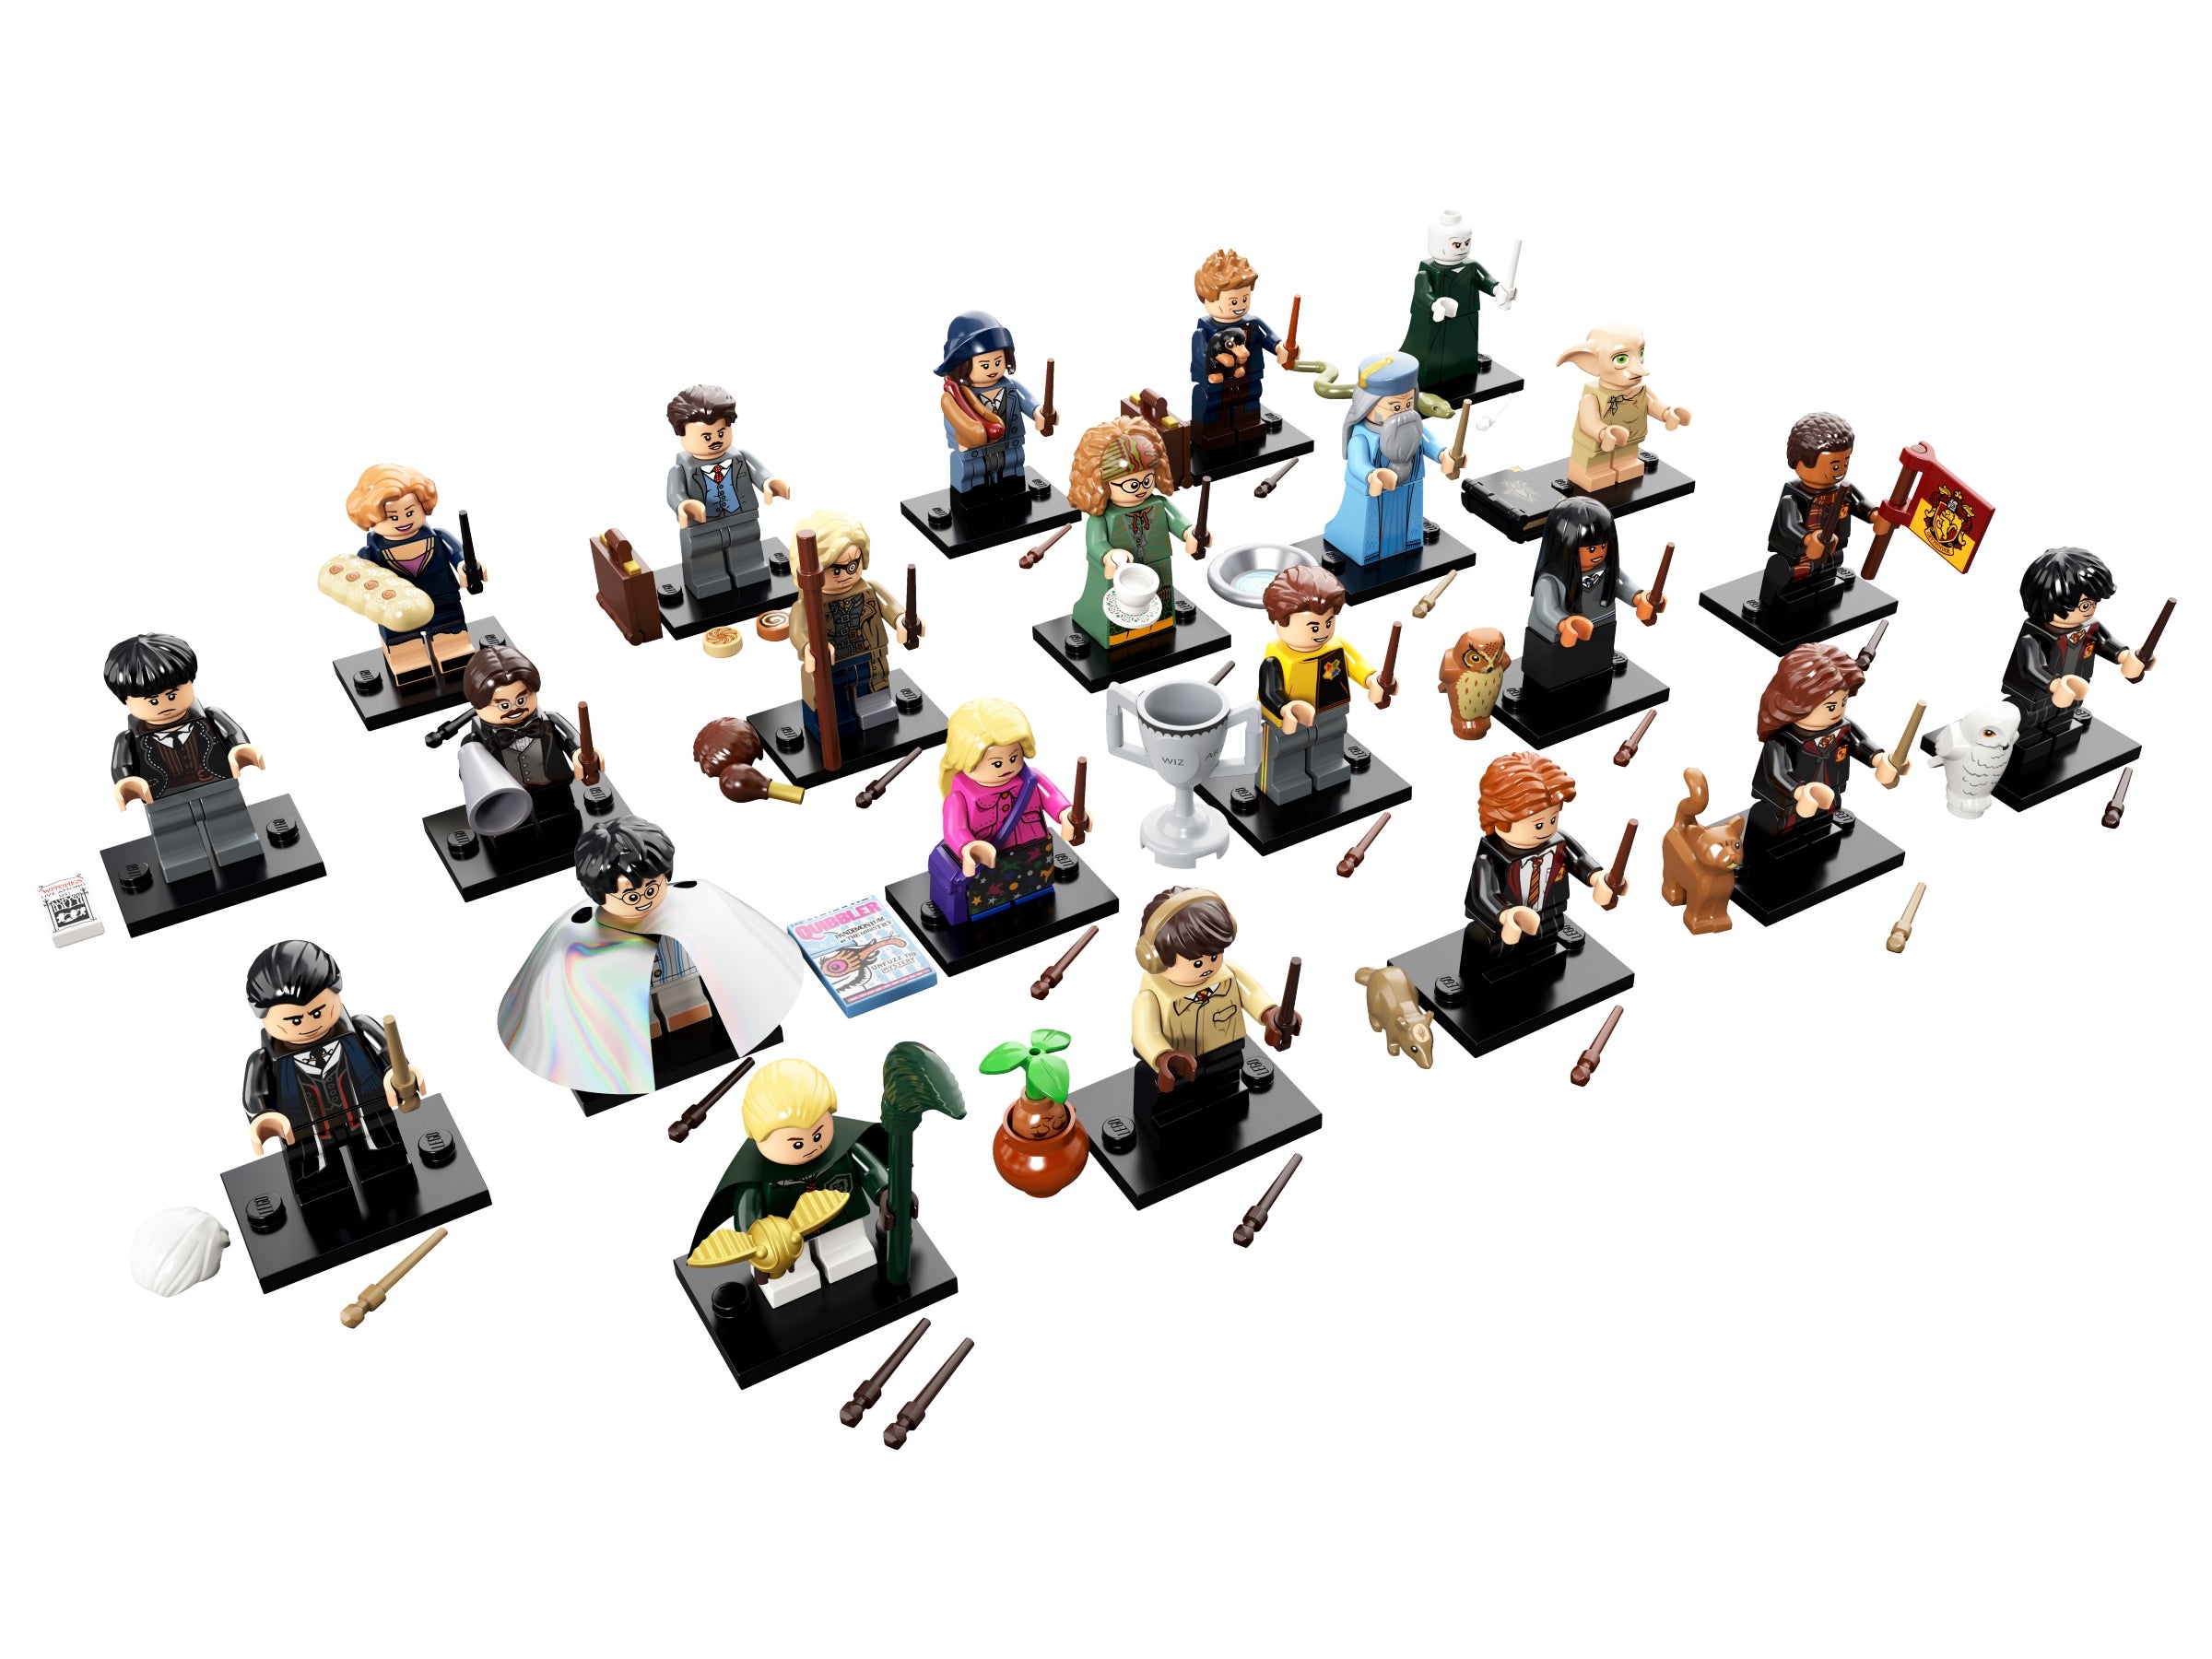 Lego Harry Potter Fantastic Beasts minifigures 71022 20 - Queenie Goldstein